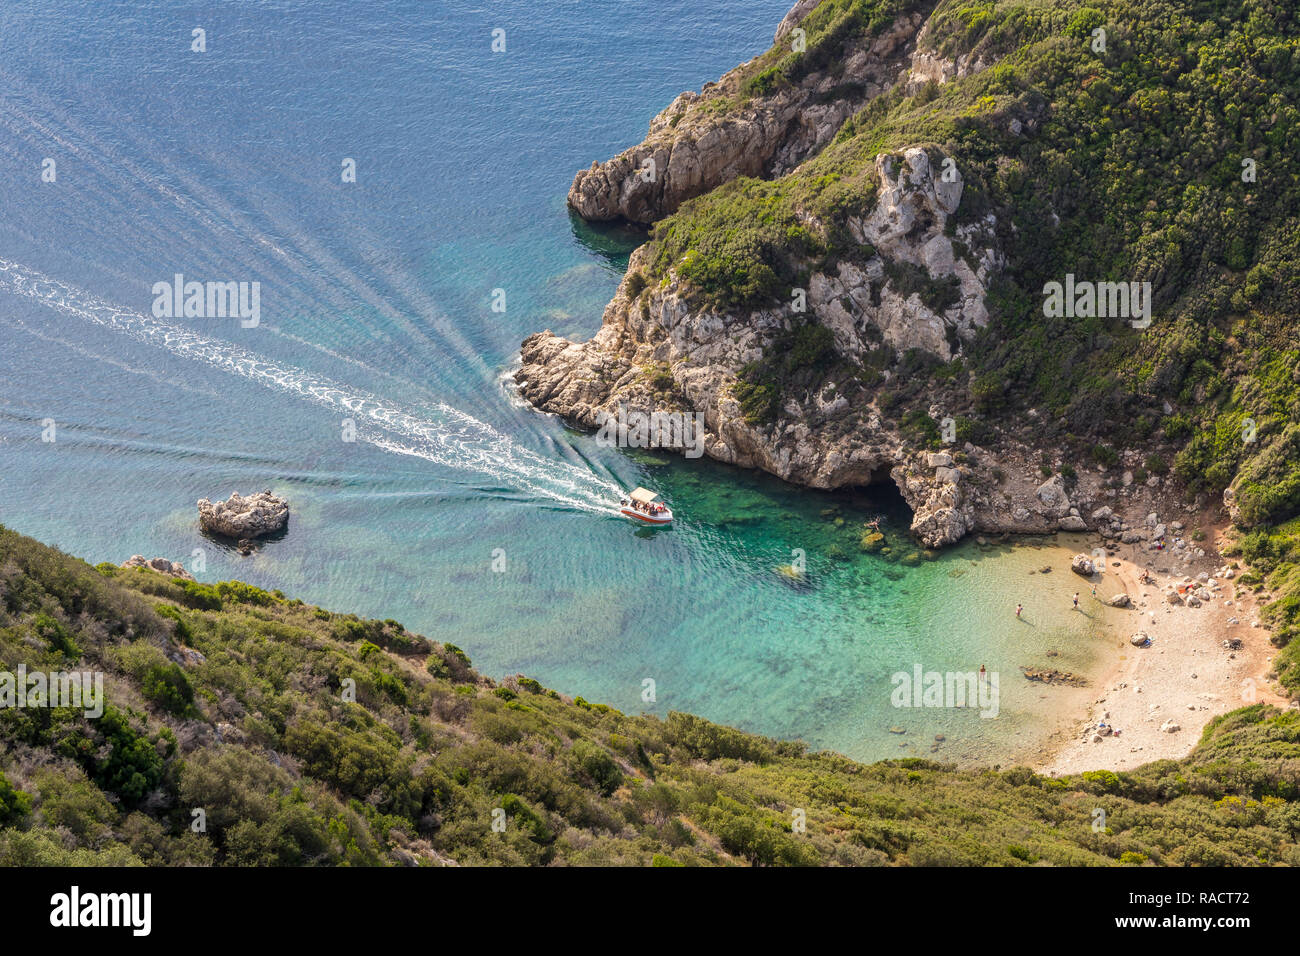 Un grand angle vue vers le bas à l'une des plages de Porto Timoni et un bateau-taxi près de la baie, l'Afionas, Corfou, îles grecques, Grèce, Europe Banque D'Images